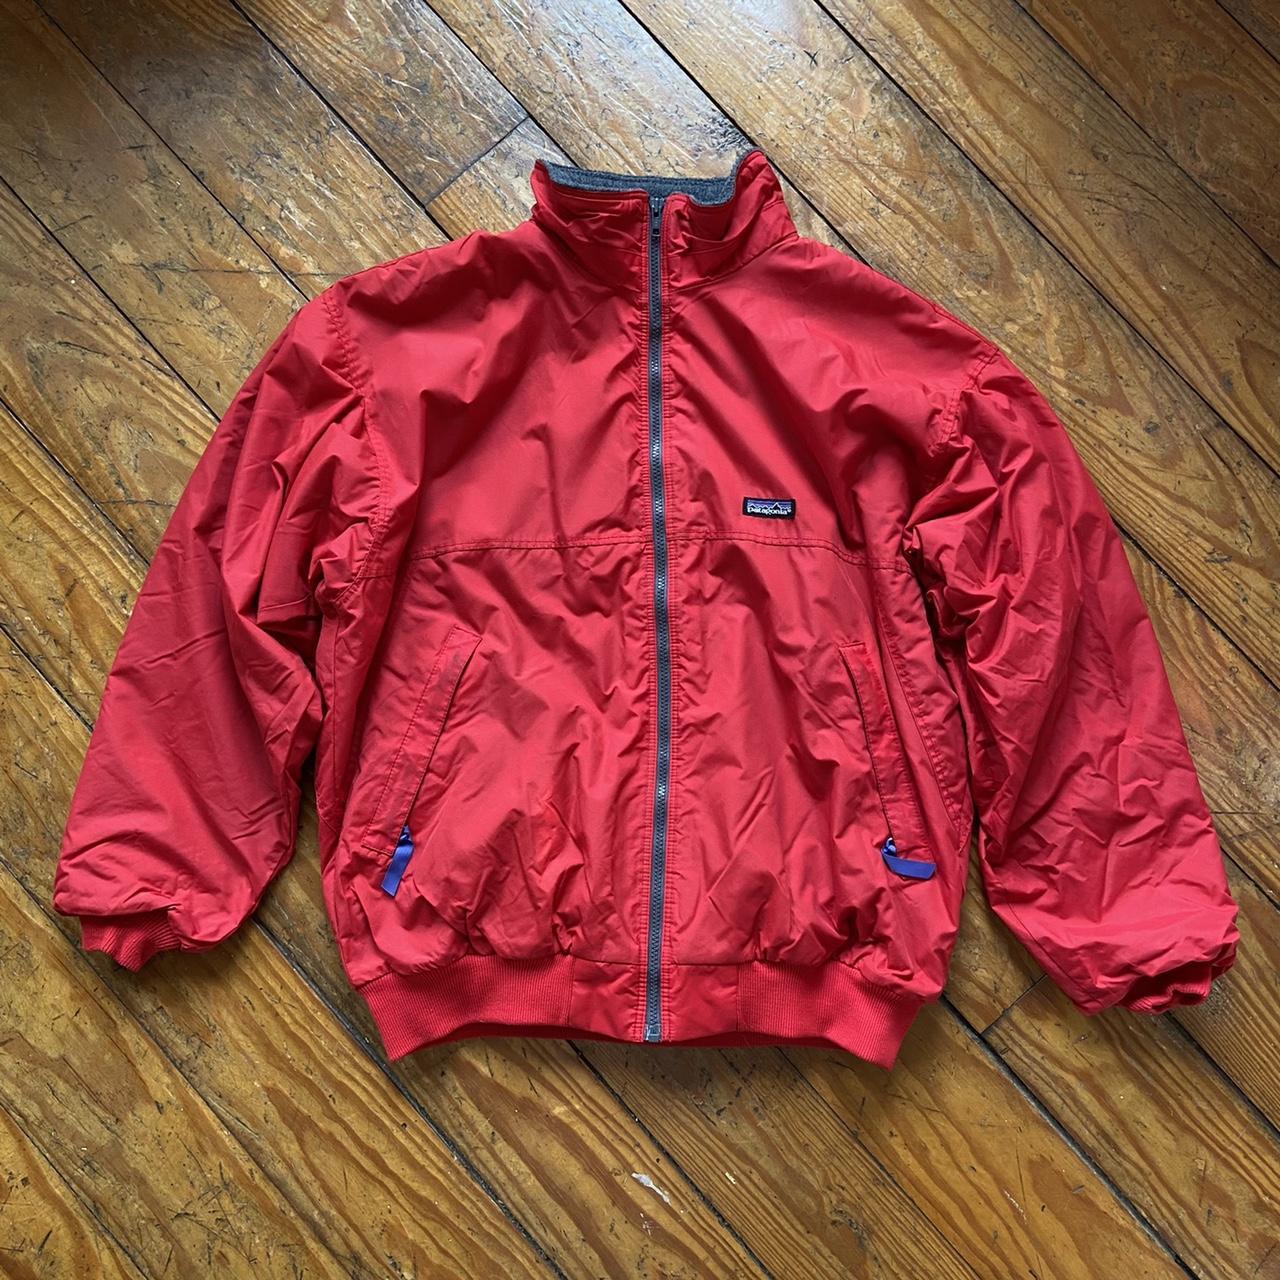 vintage 90s Patagonia lined windbreaker jacket 🧥... - Depop